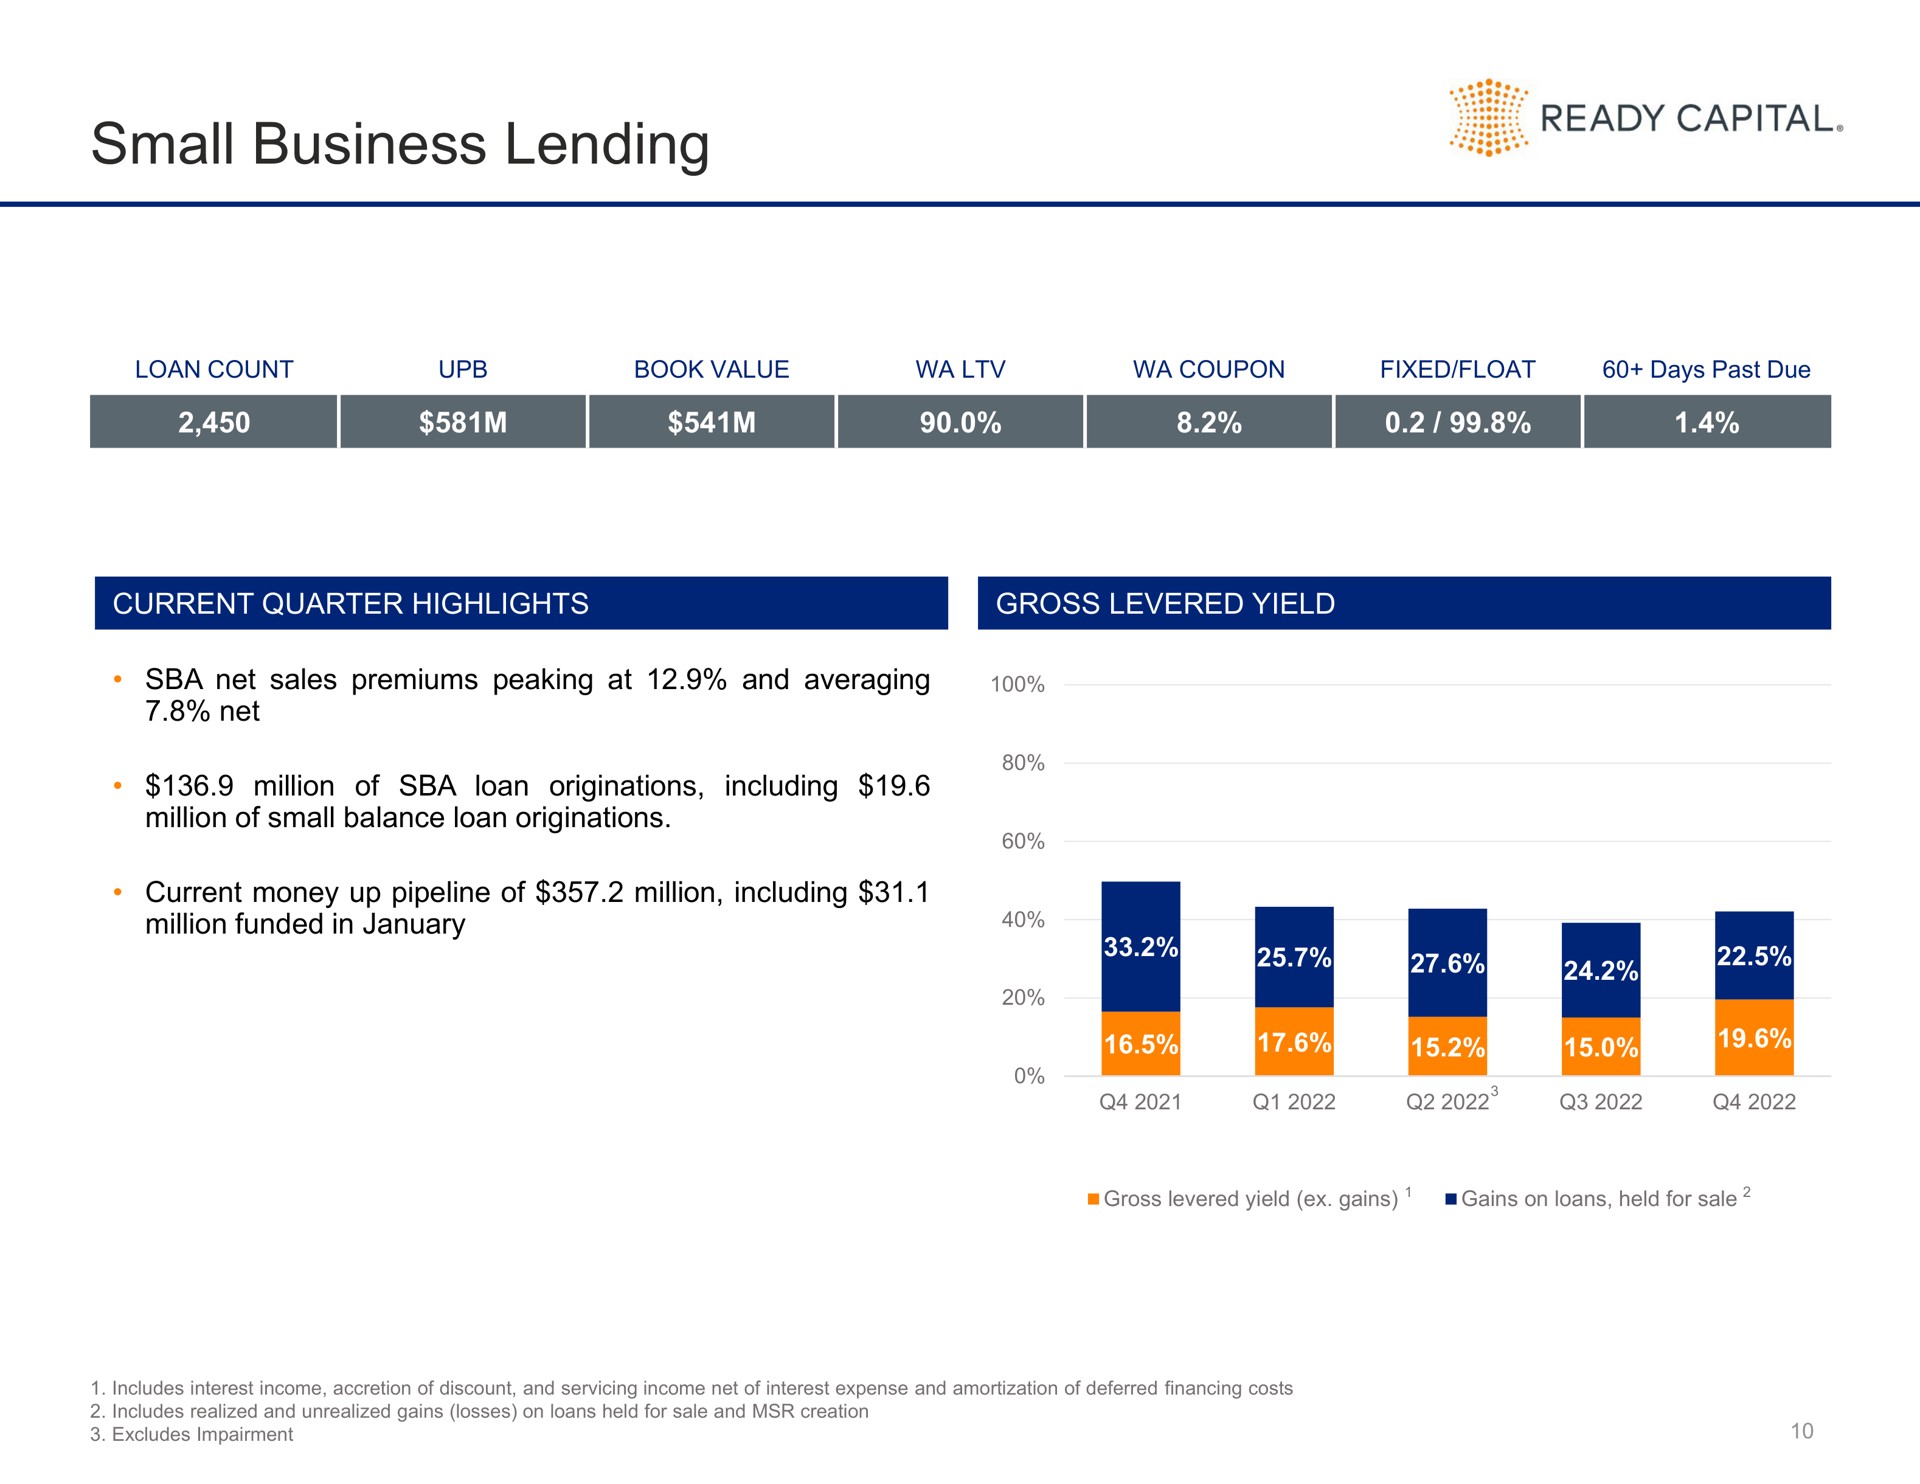 small business lending ready capital | Ready Capital